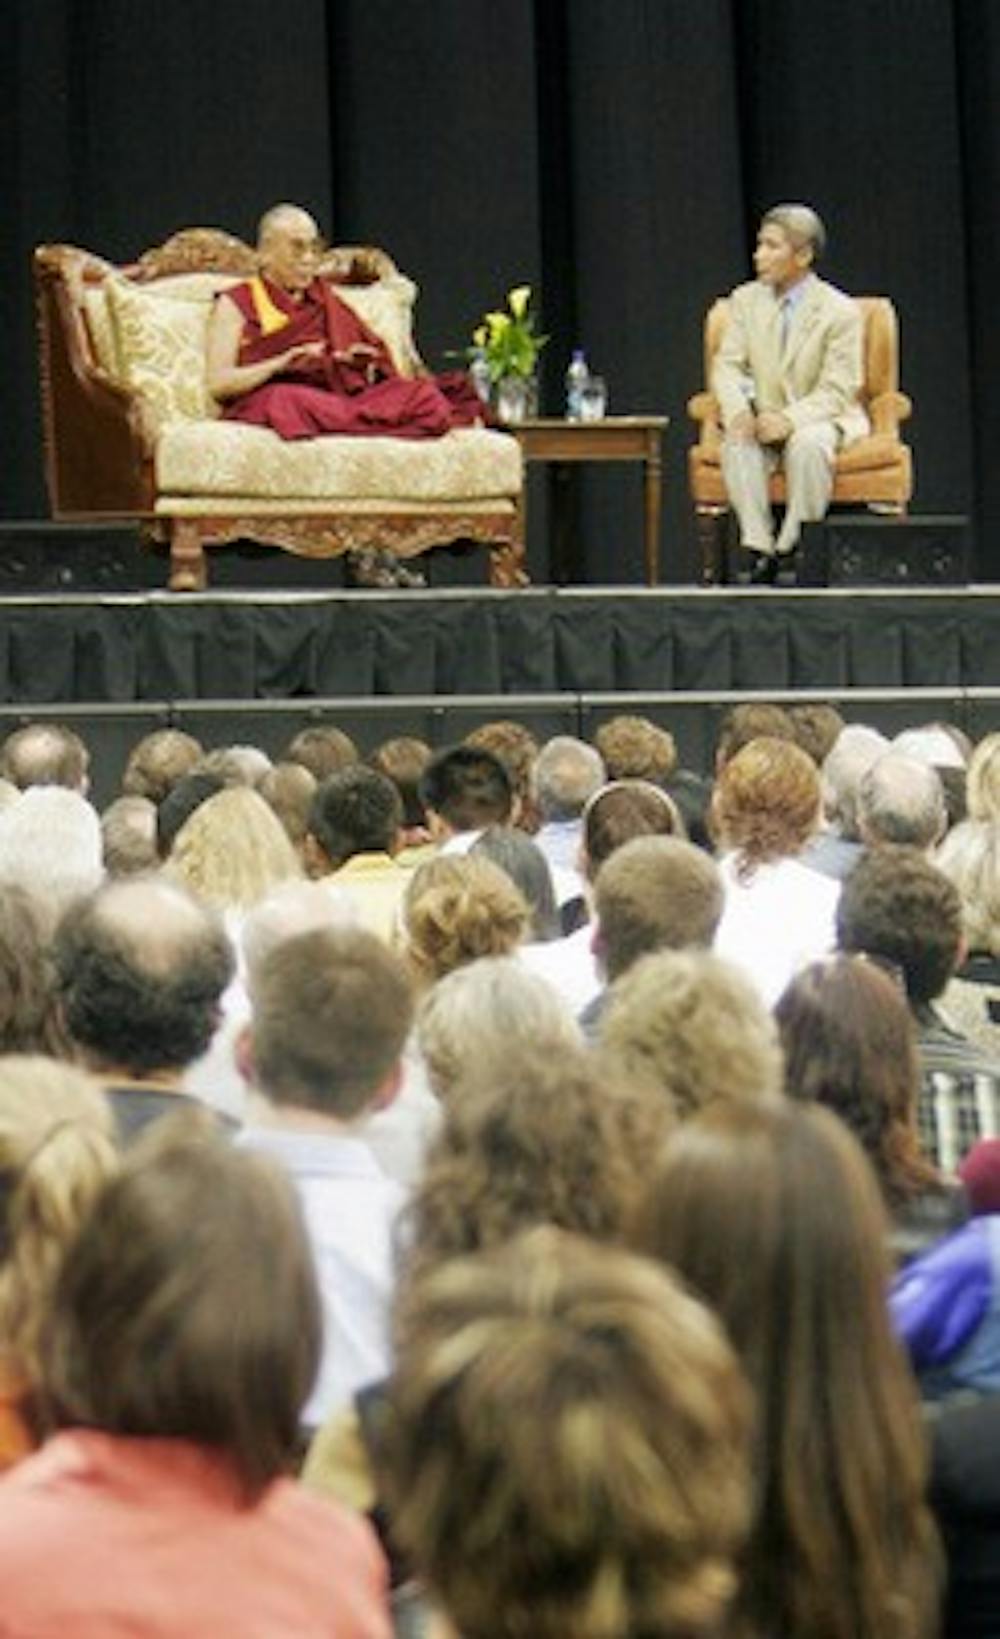 Dalai Lama to visit Madison this summer